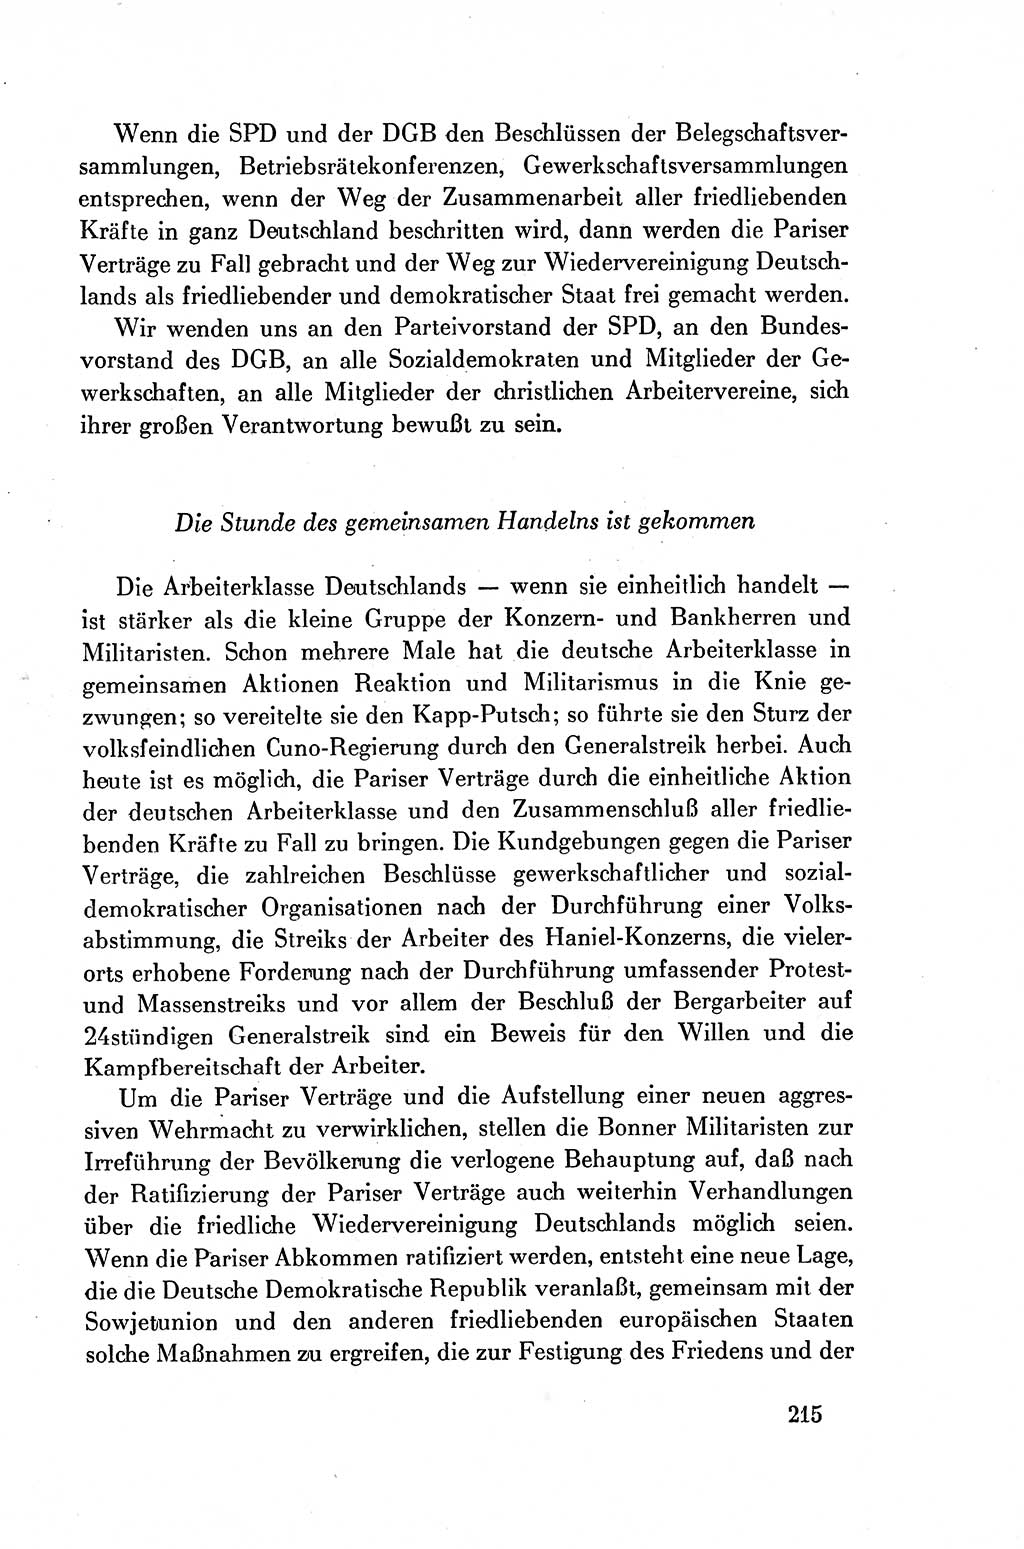 Dokumente der Sozialistischen Einheitspartei Deutschlands (SED) [Deutsche Demokratische Republik (DDR)] 1954-1955, Seite 215 (Dok. SED DDR 1954-1955, S. 215)